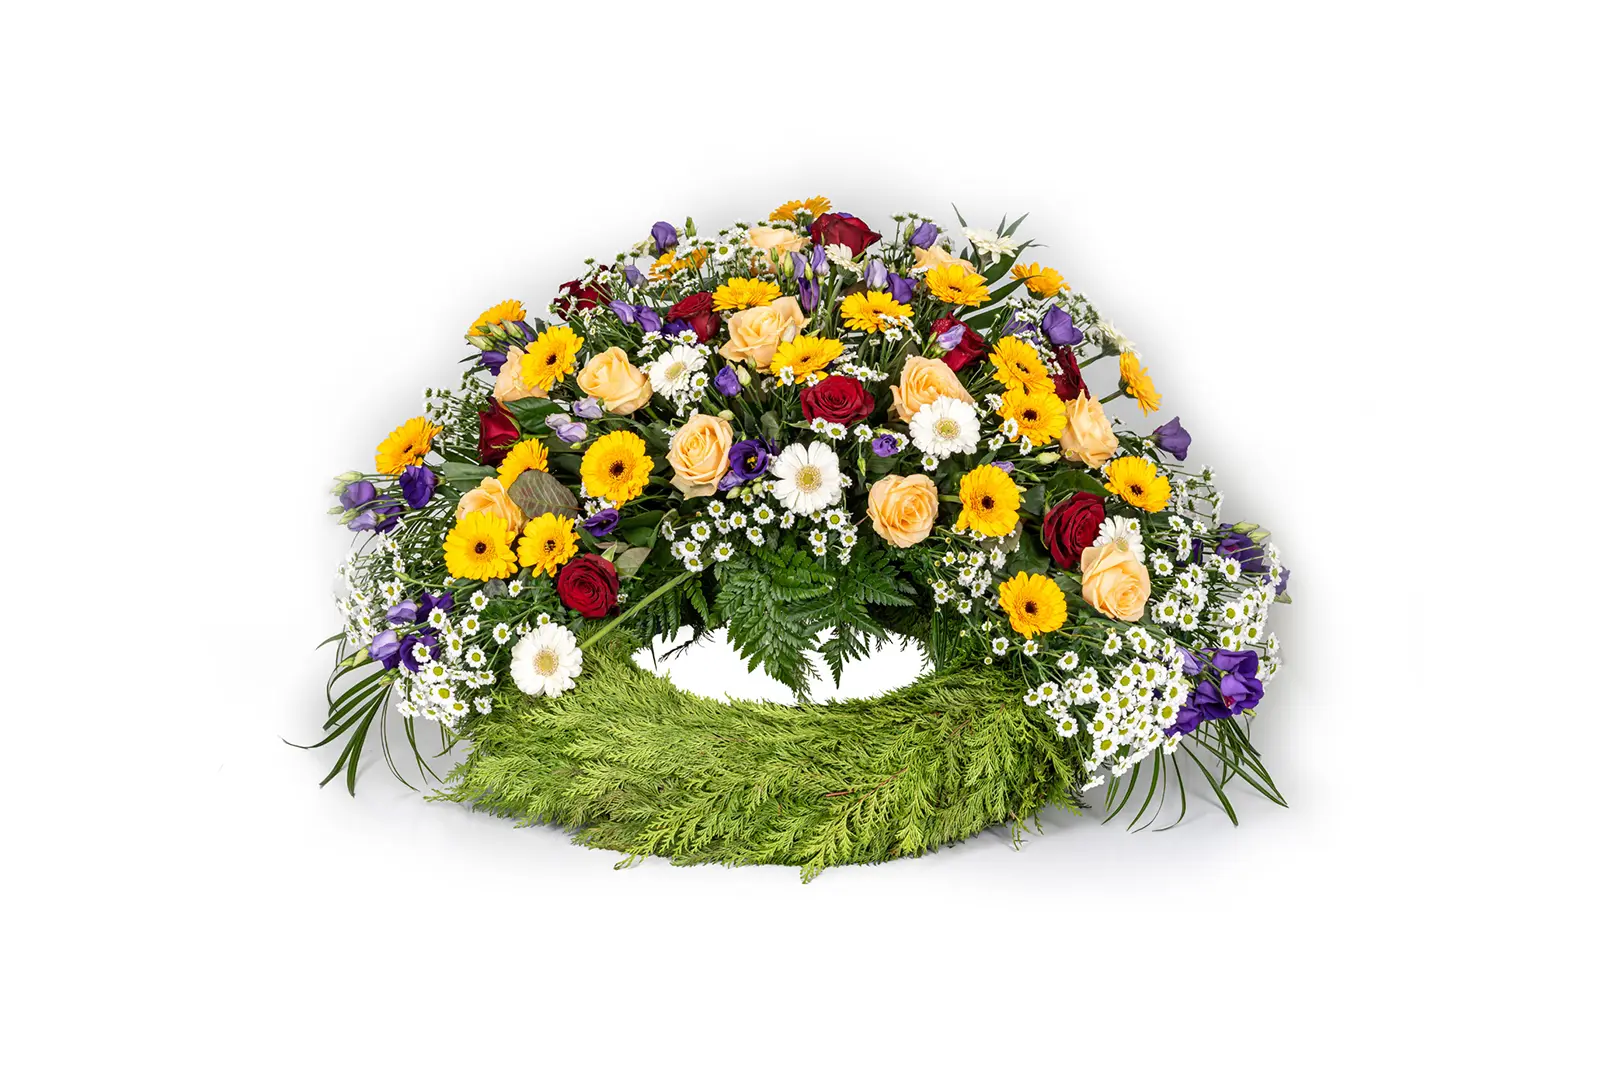 Bestattungshaus Ludger Schlüter | Trauerfloristik | Blumengebinde auf der Urne | Rote Rosen